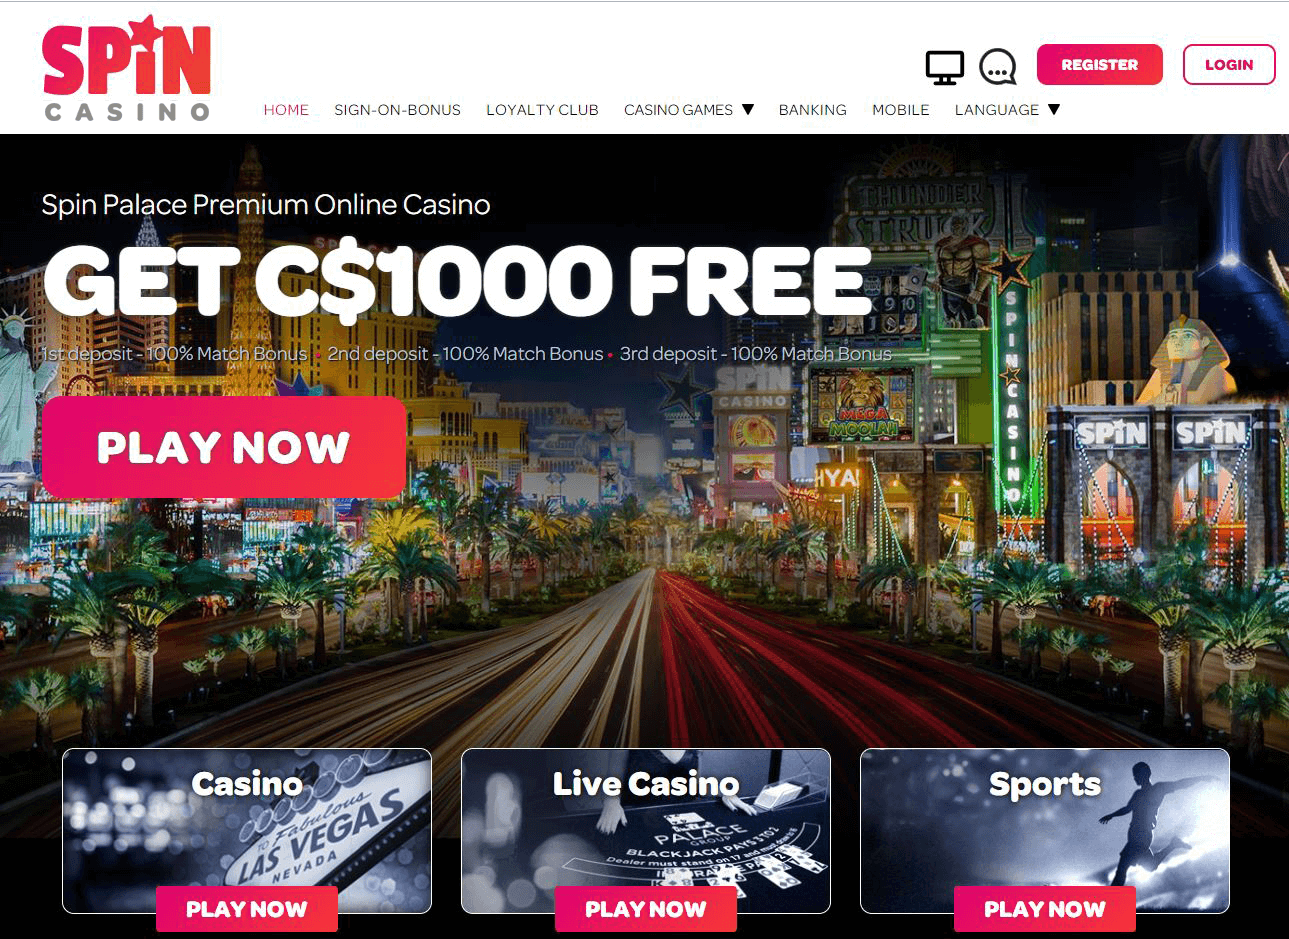 Spin Tastic Online Casino